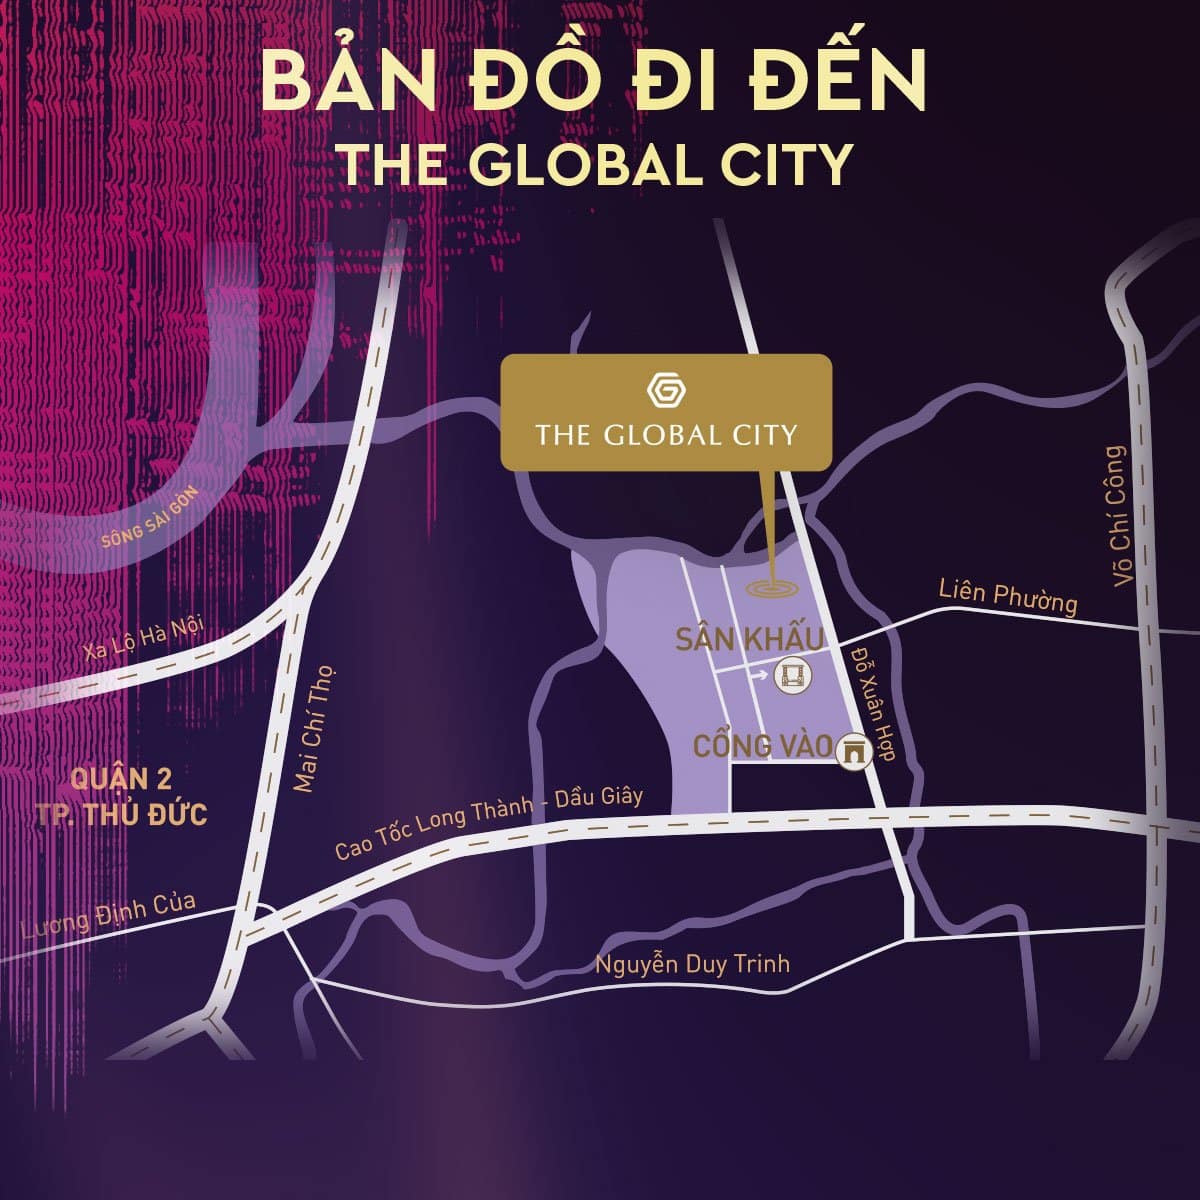 Bản đồ đi đến The Global City.